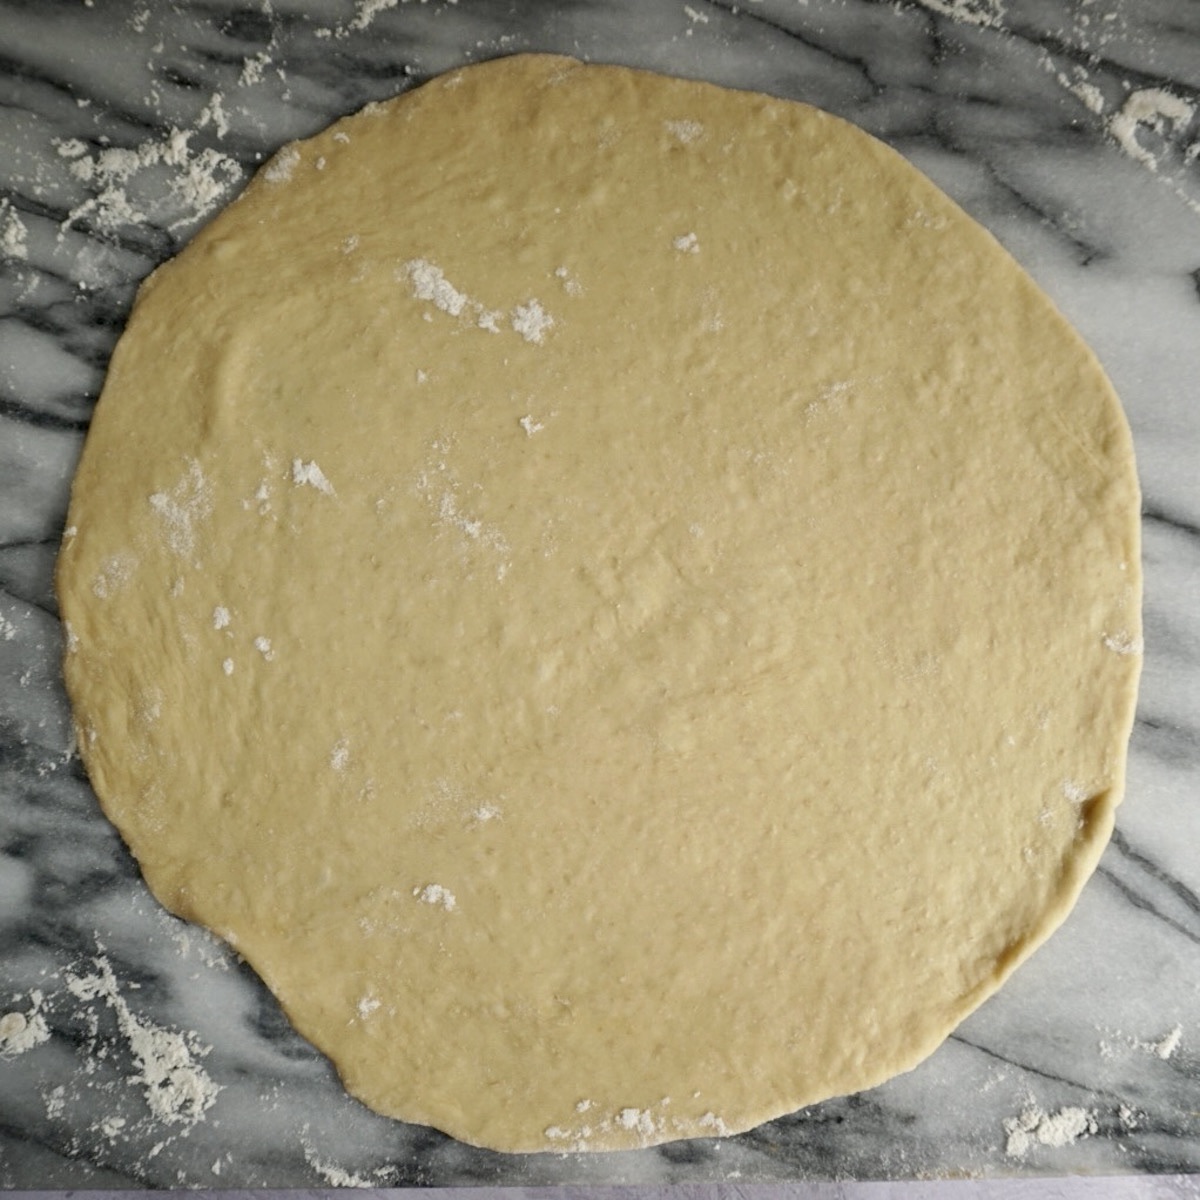 A circle of bread dough.